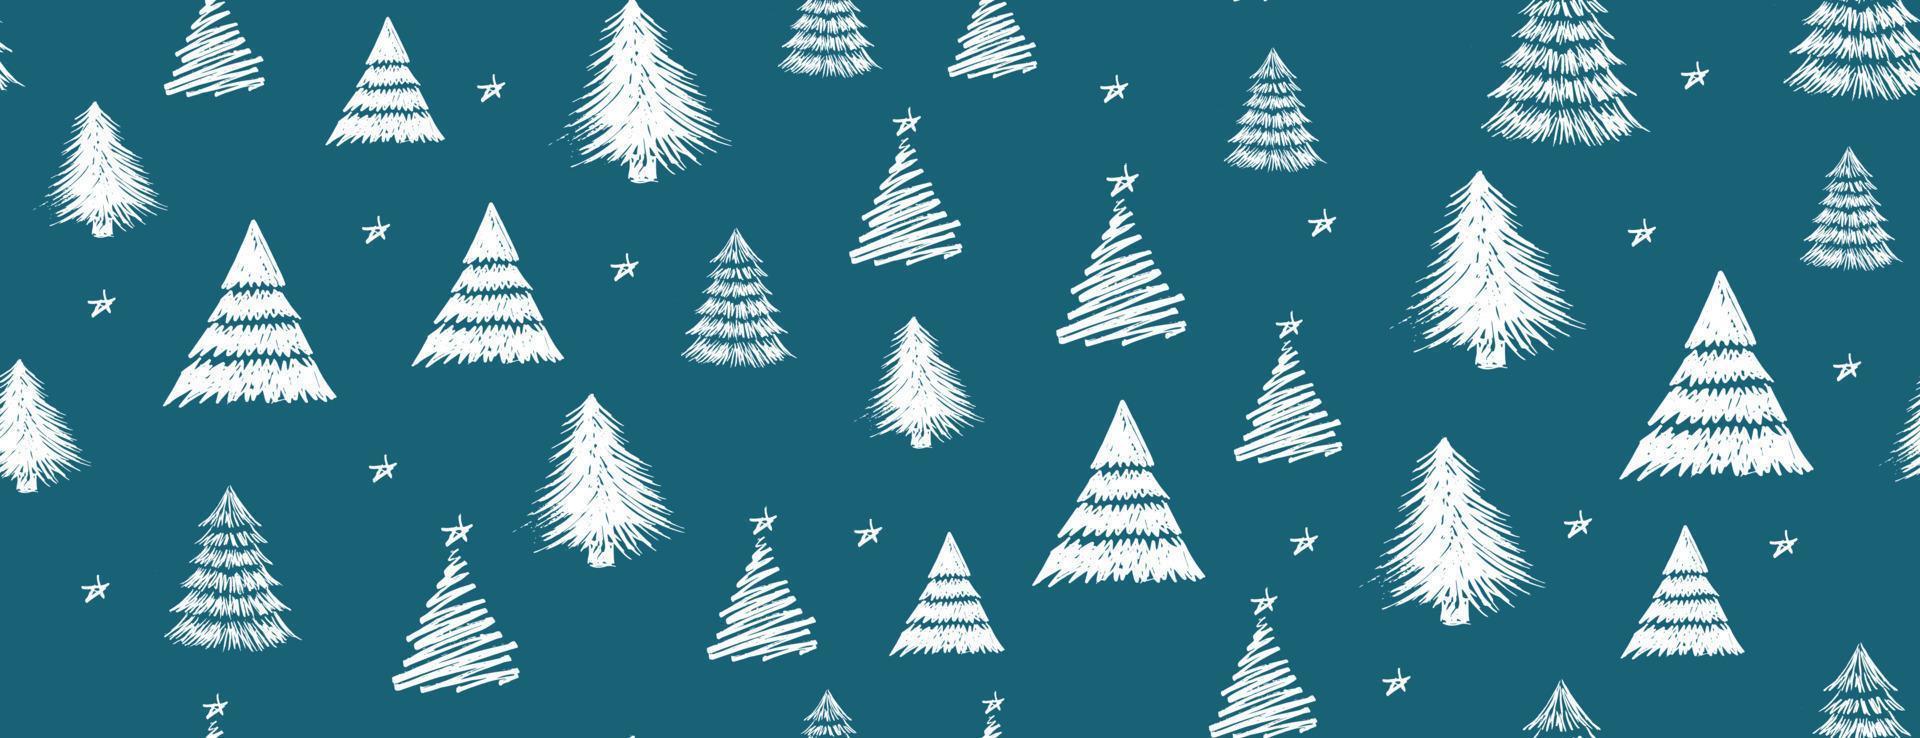 kerstboom ontwerp, vector set.